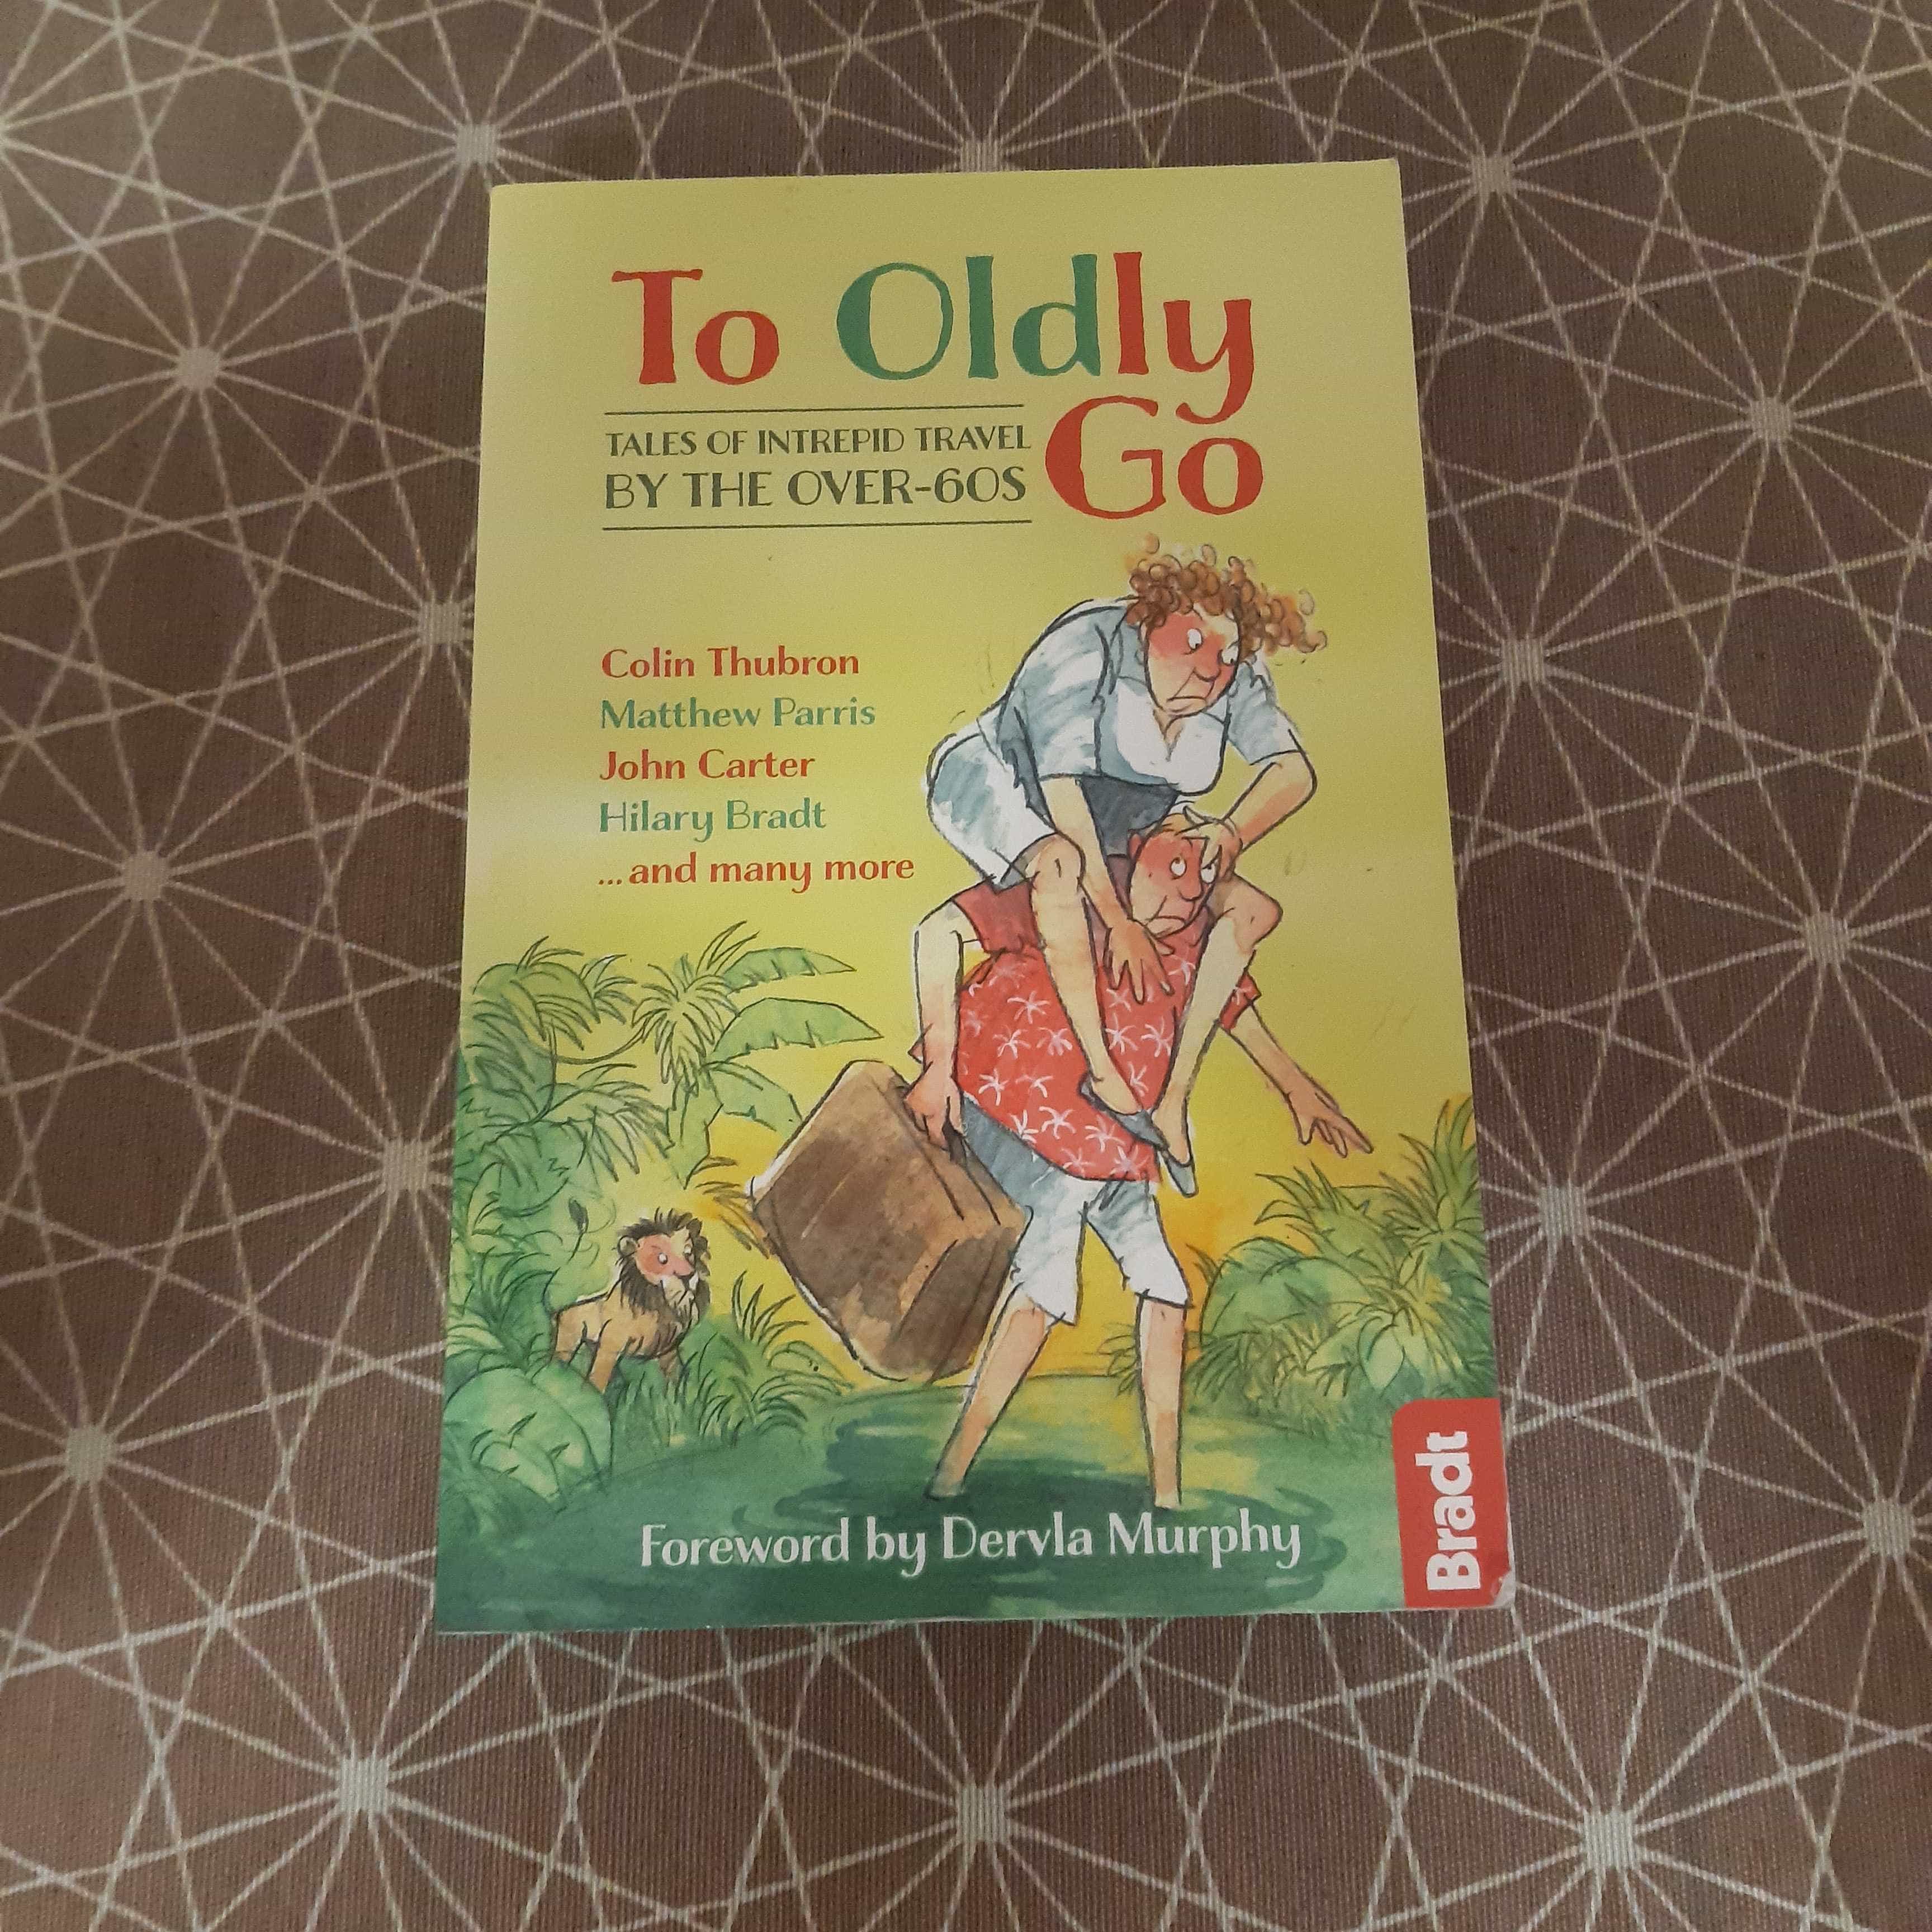 Libro de segunda mano: To oldly go